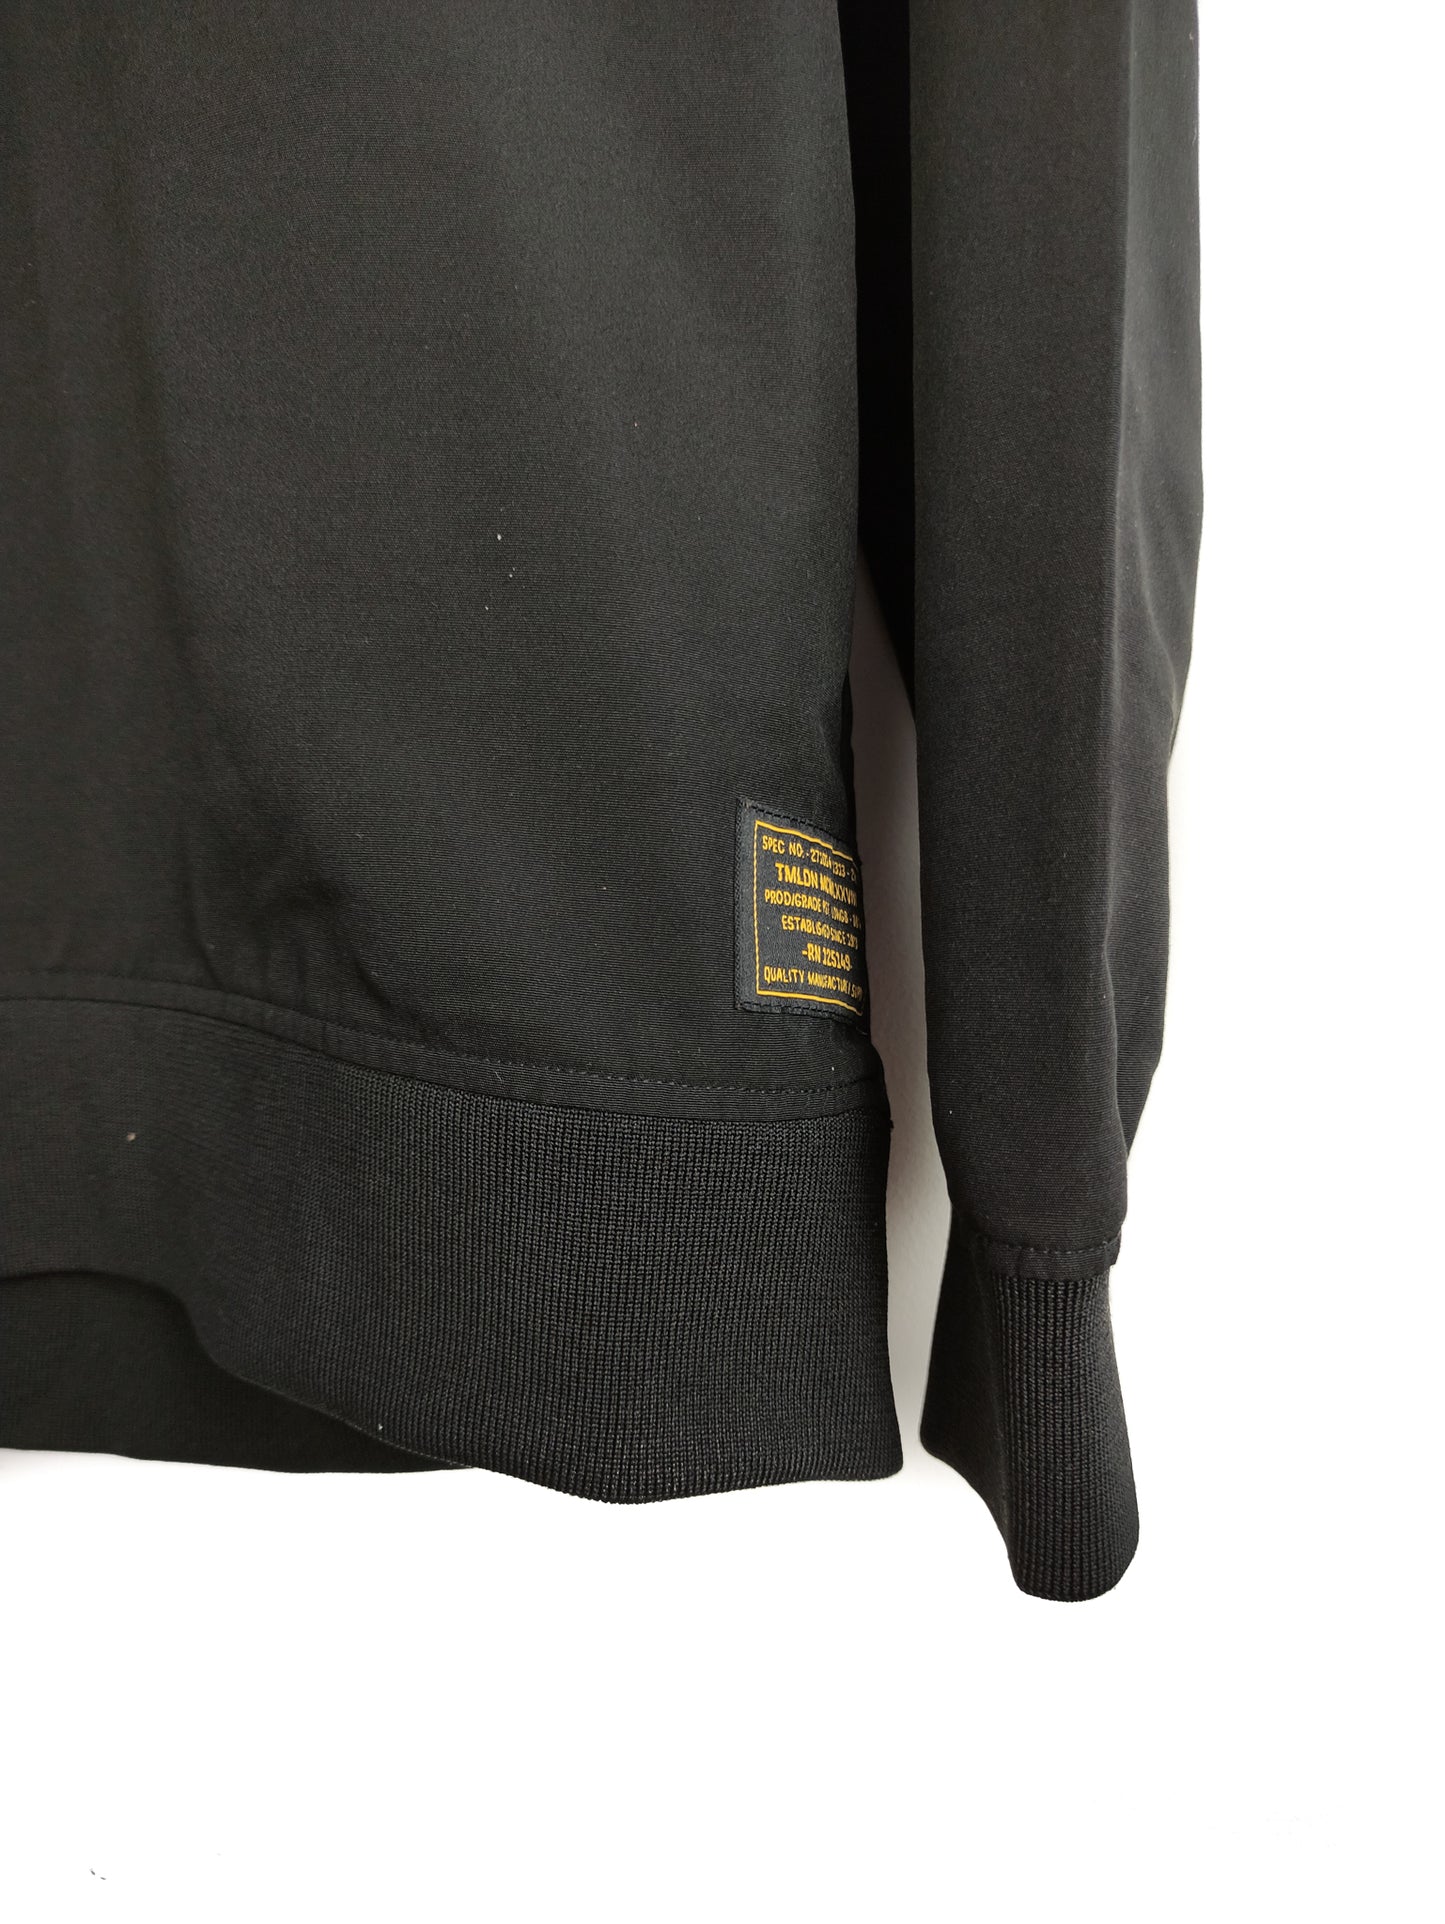 Oversized Ανδρική Φούτερ Μπλούζα TOPMAN σε Μαύρο Χρώμα (Medium)